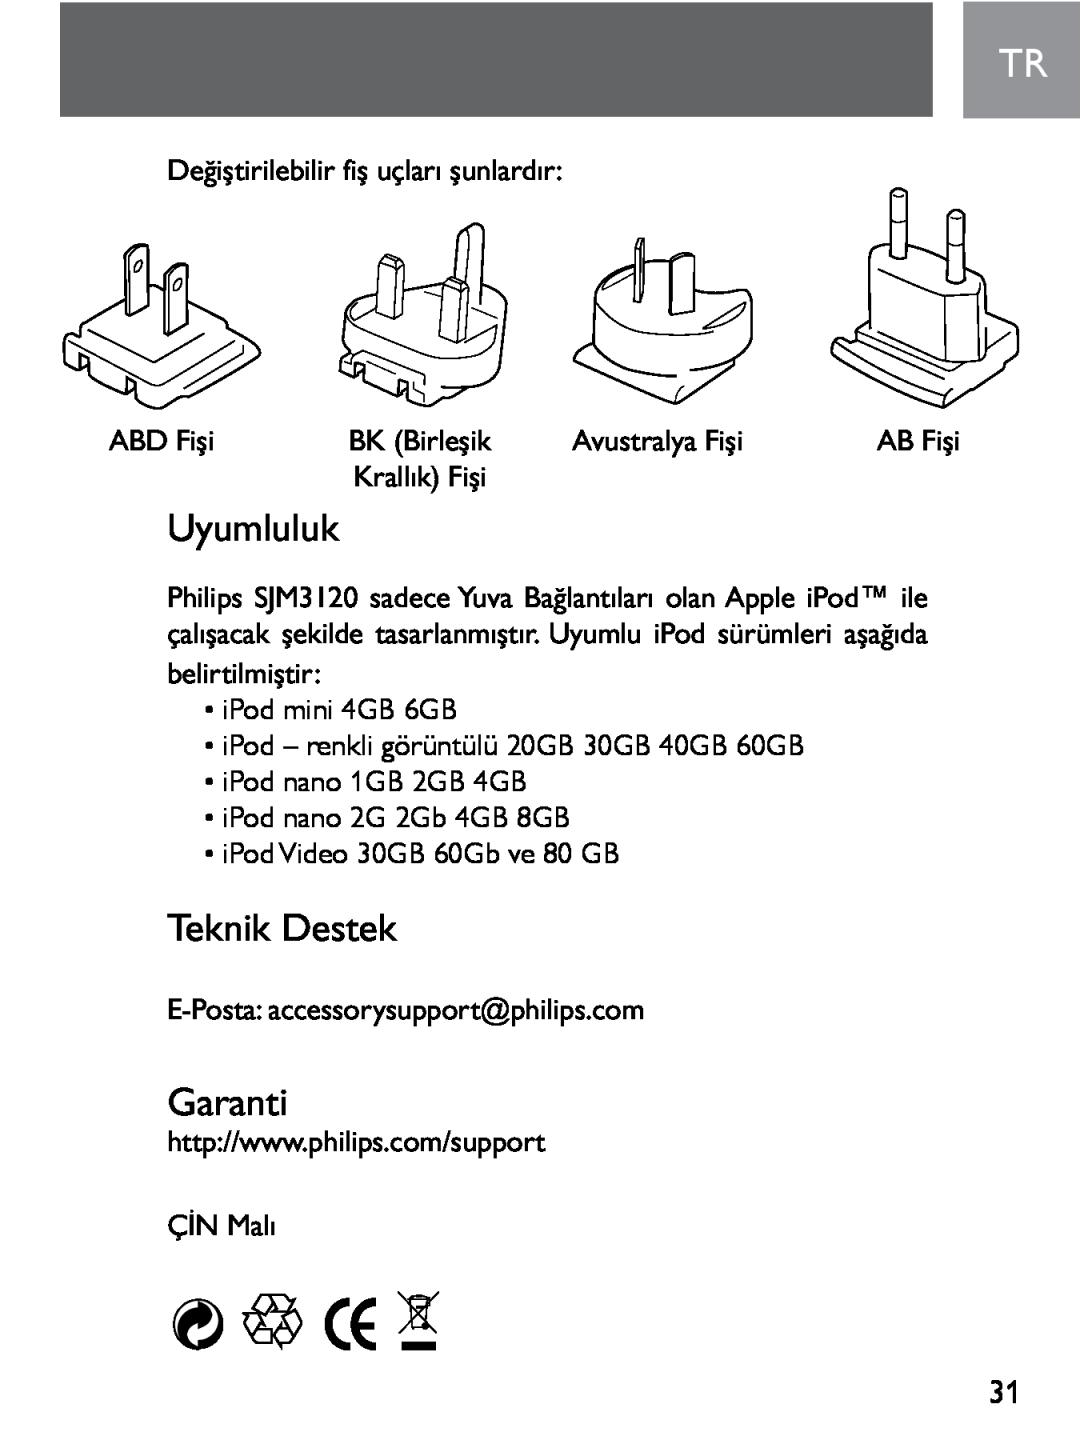 Philips SJM3120 user manual Uyumluluk, Teknik Destek, Garanti, AB Fişi 